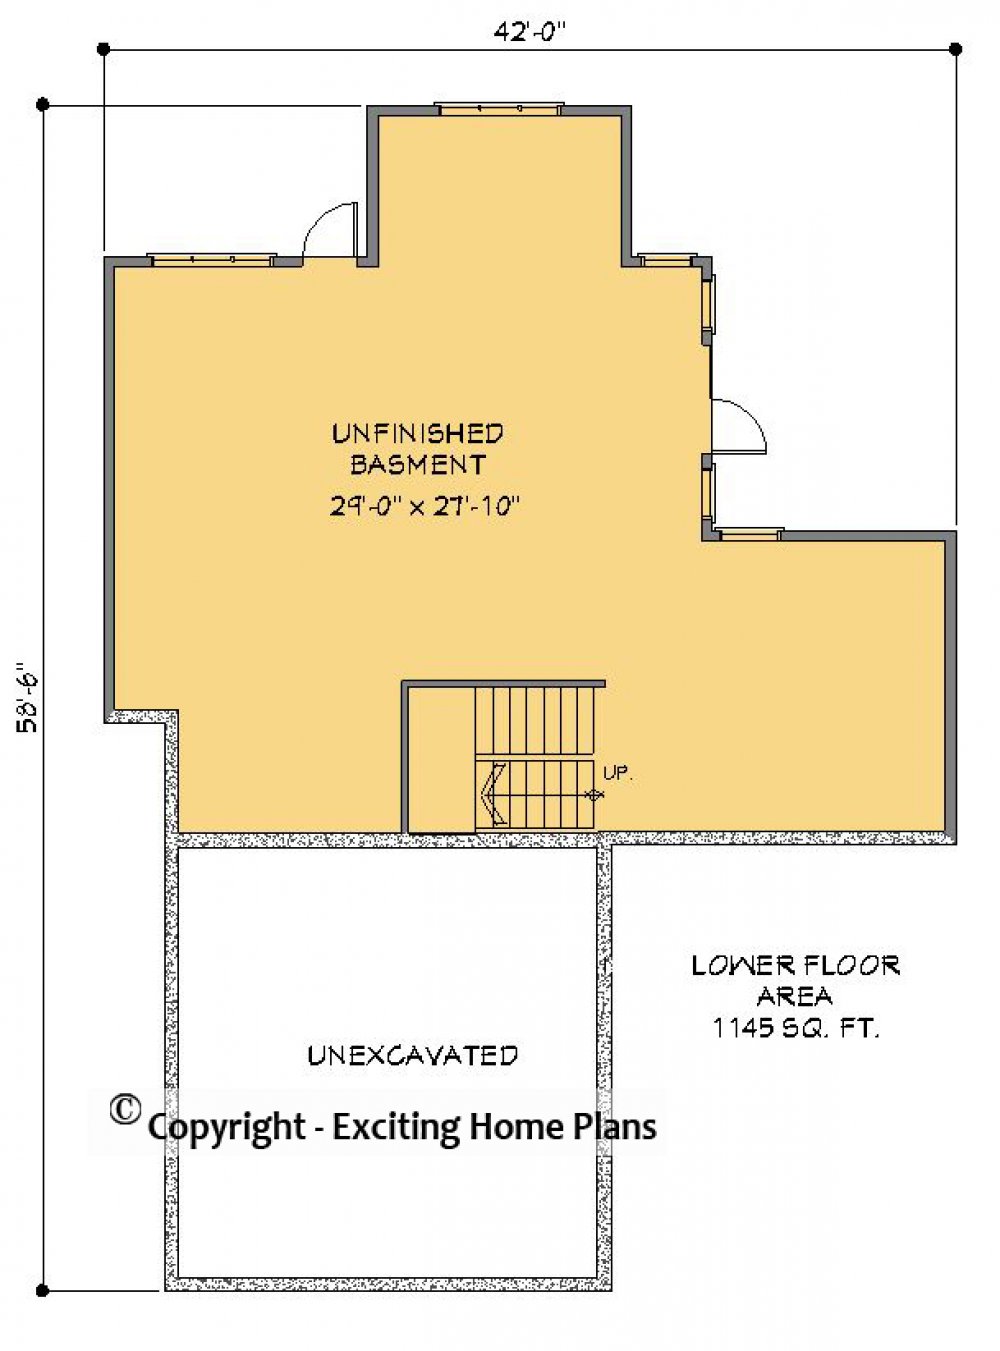 House Plan E1492-10 Lower Floor Plan